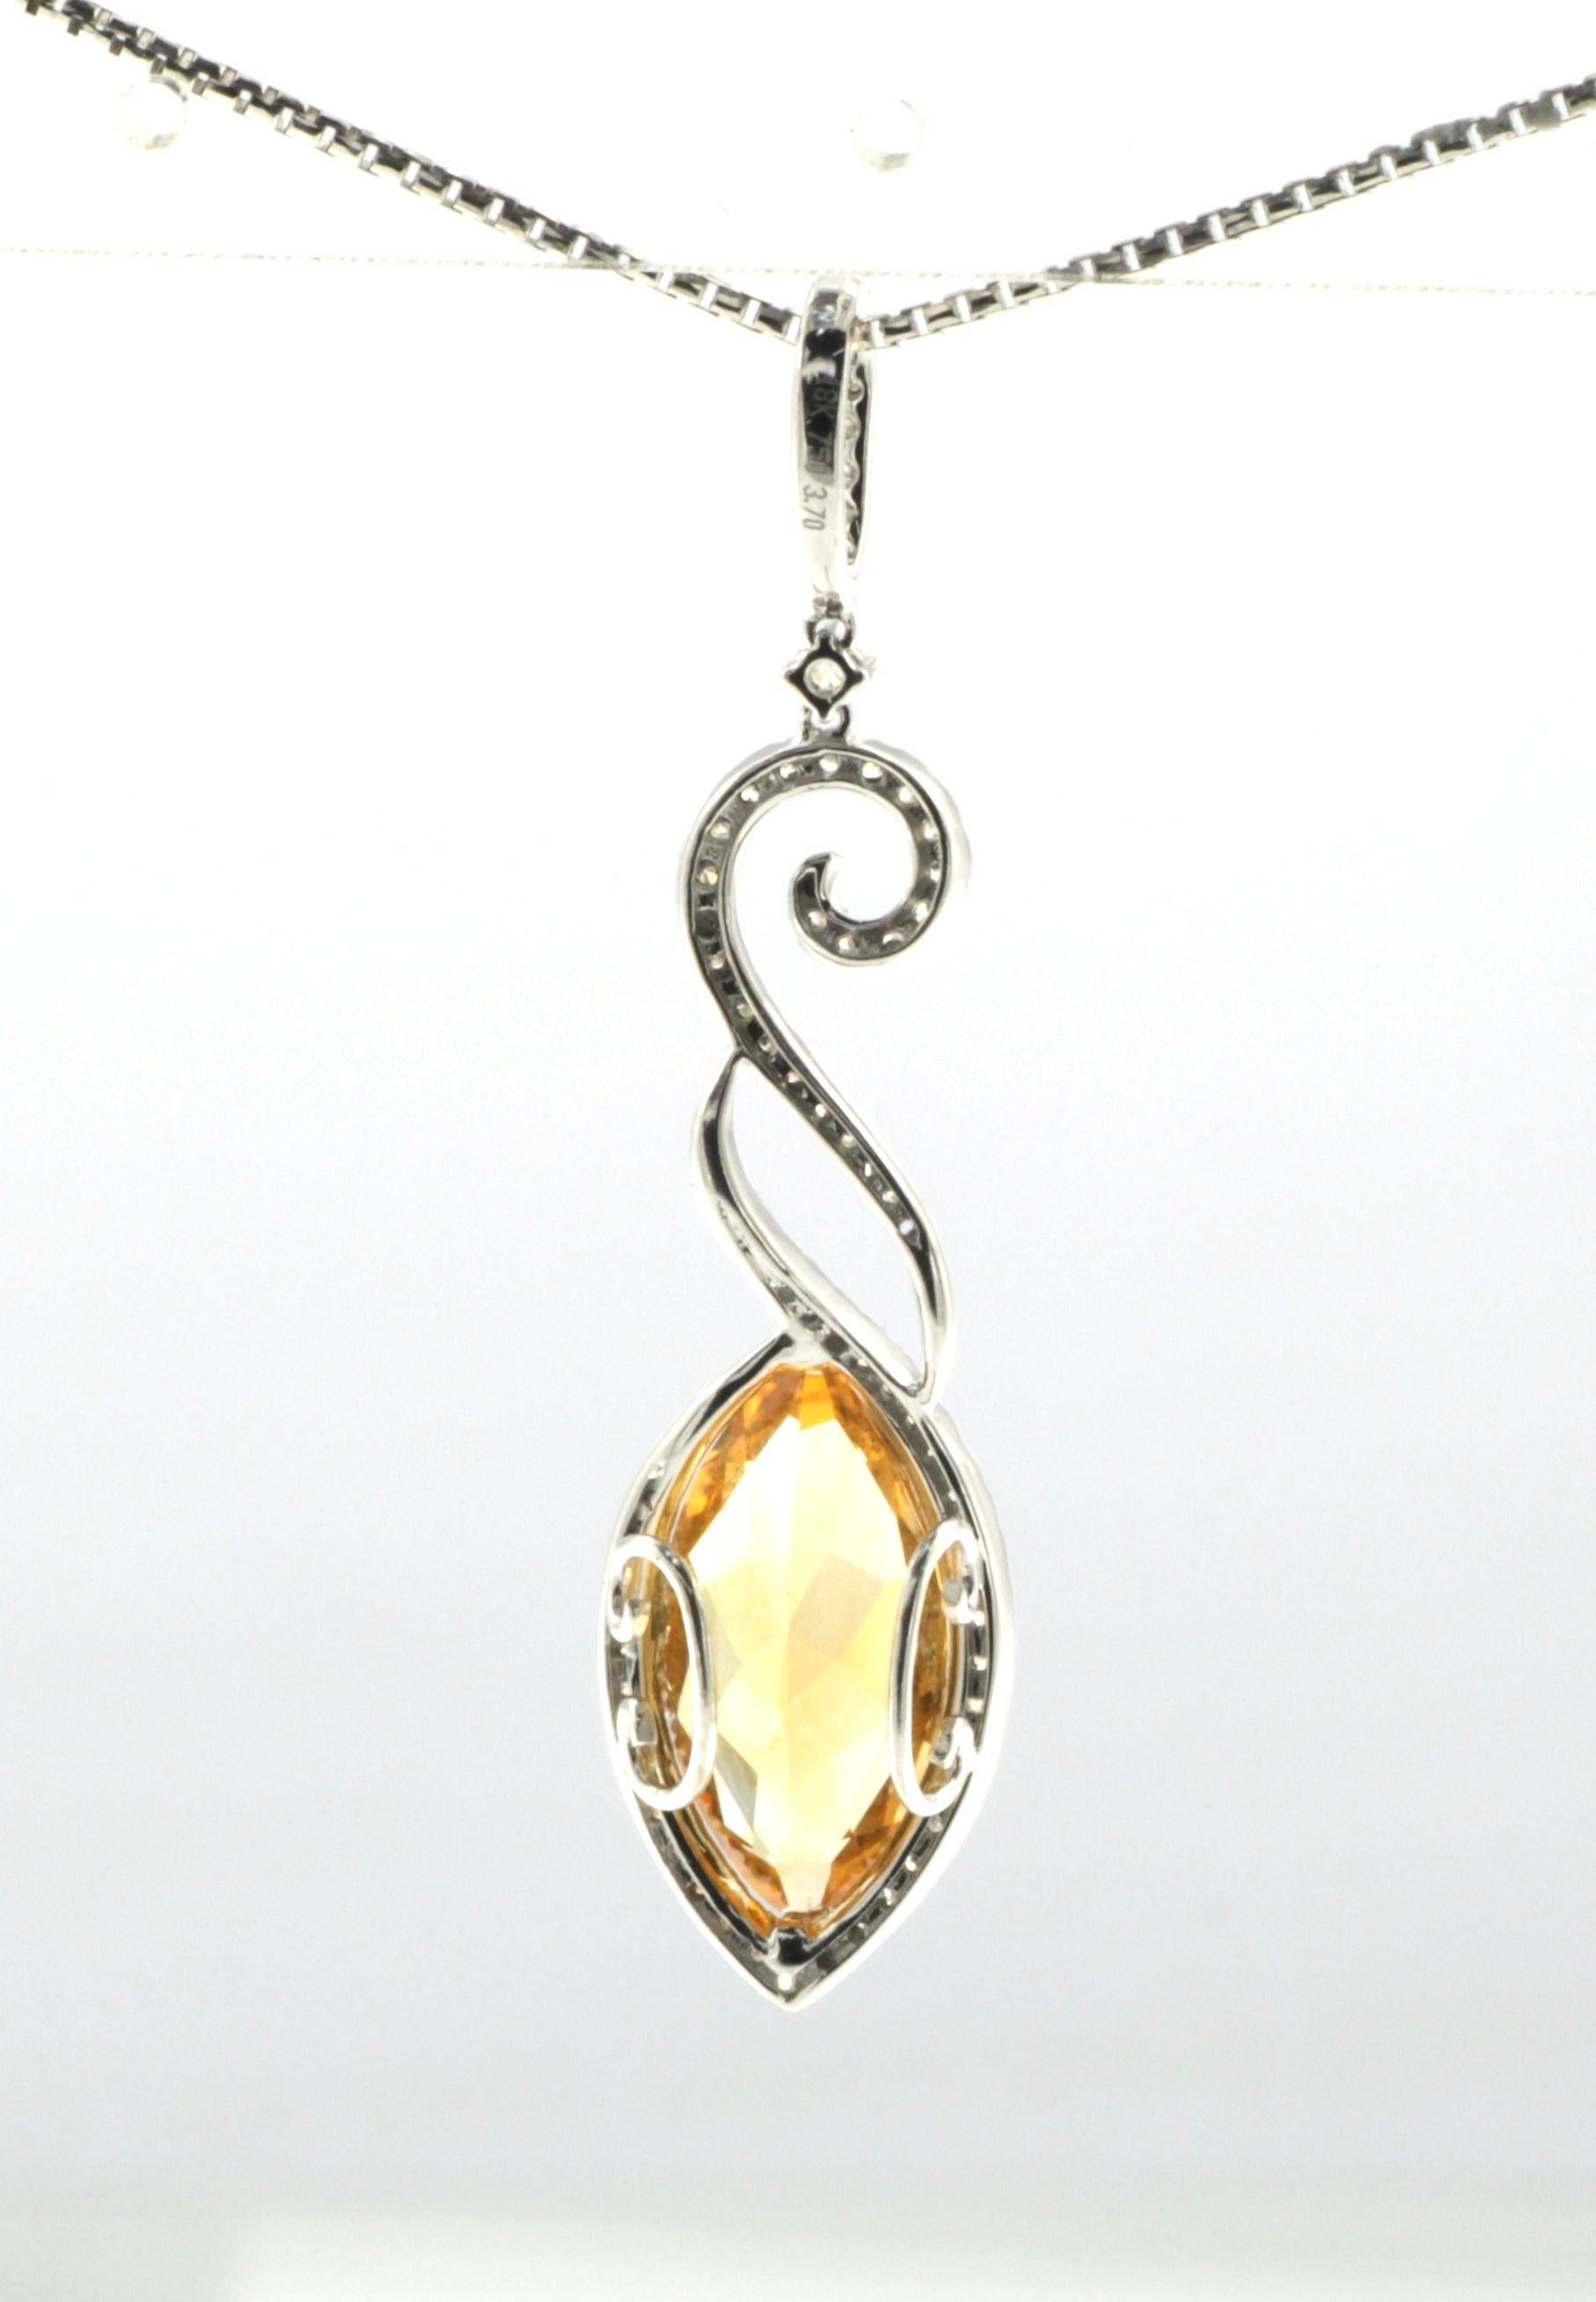 Découvrez l'élégance avec notre superbe pendentif, orné d'une citrine de 3,70 carats en forme de marquise, entourée de 0,50 carats de diamants taillés en blanc brillant. La citrine dorée est parfaitement mise en valeur par l'éclat des diamants,